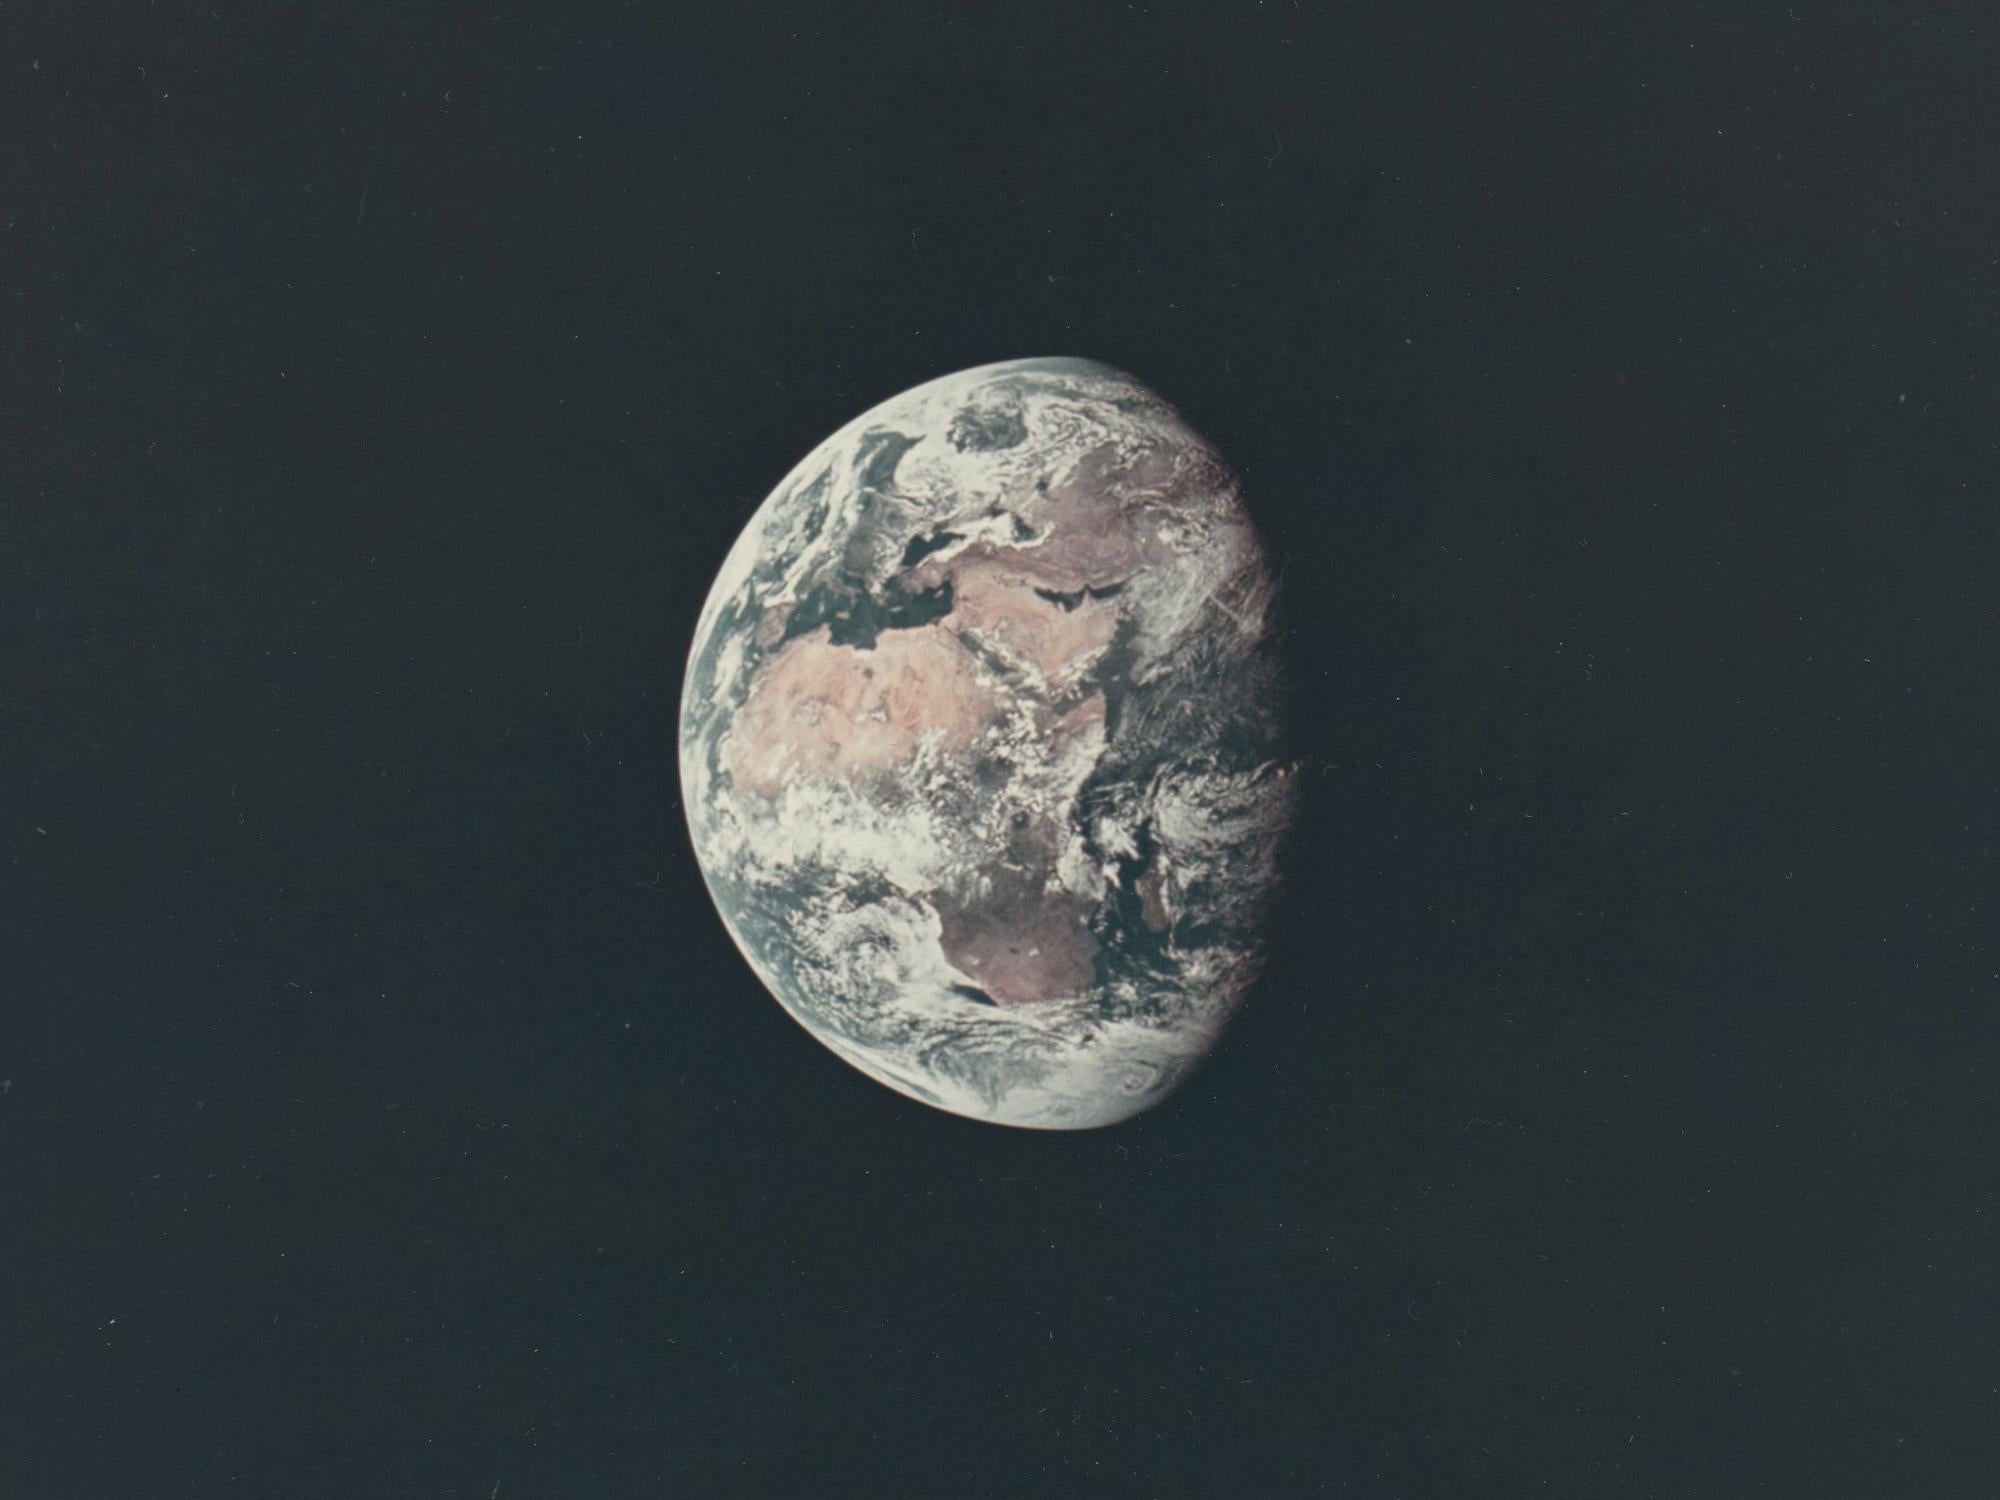 American Vintage NASA Photograph of the Apollo 11 Moon Landing